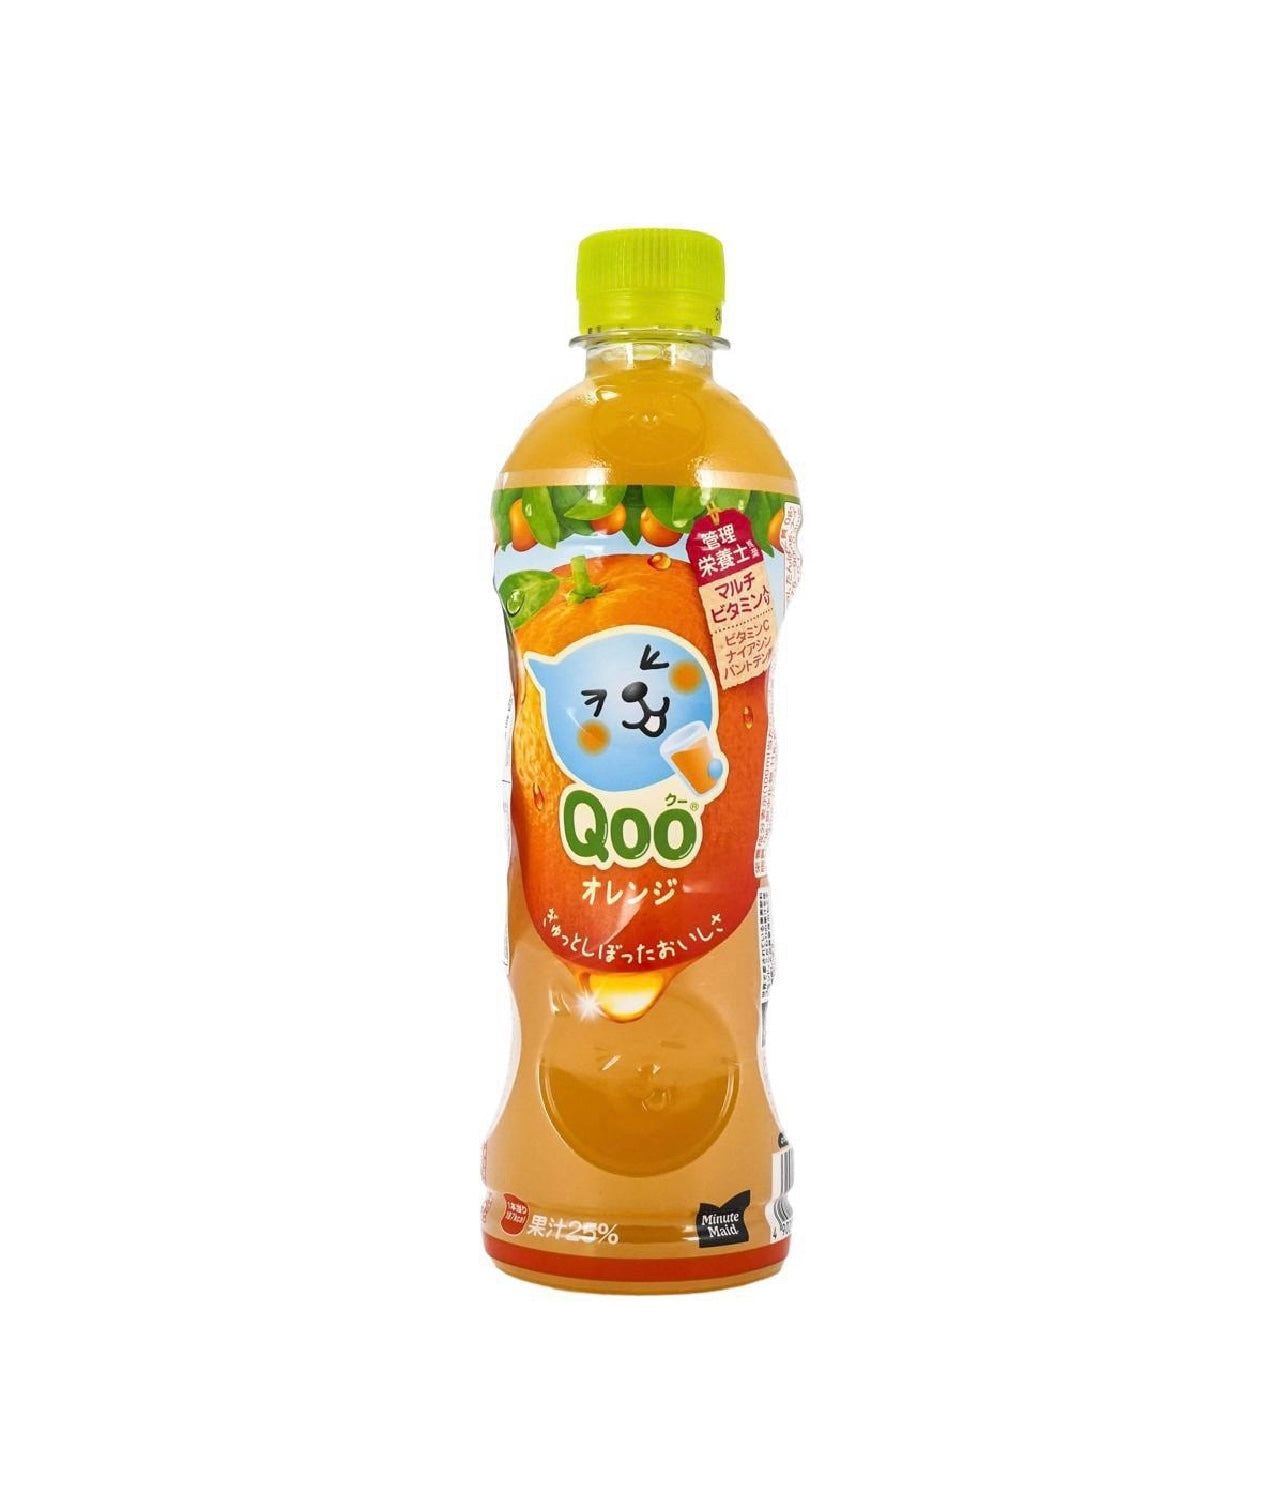 Minute Maid Qoo Orange Juice 14.37 fl oz